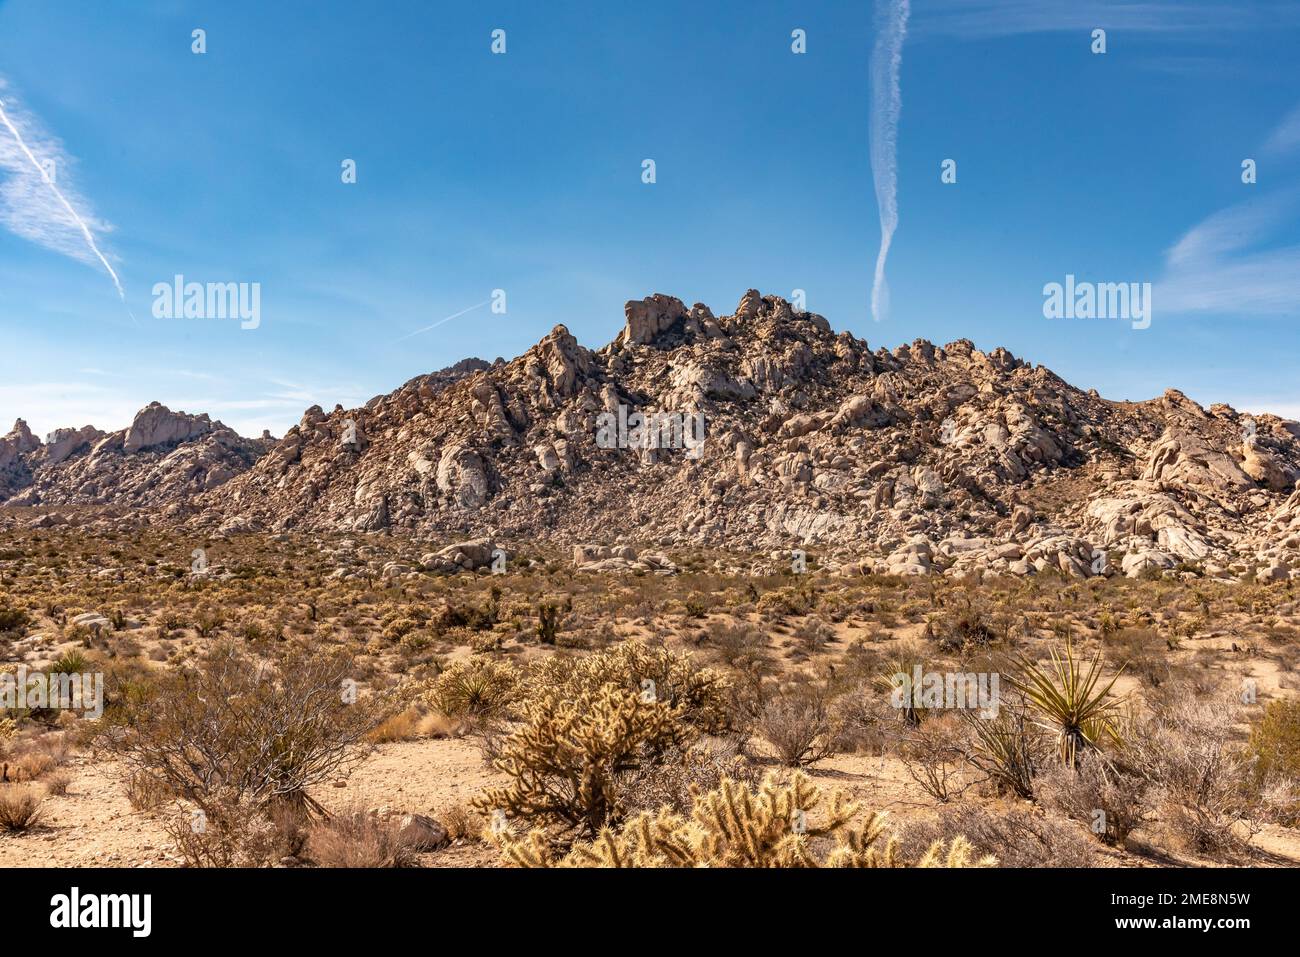 Landschaftsblick aus der Mojave-Wüste, Kalifornien, Vereinigte Staaten von Amerika. Stockfoto